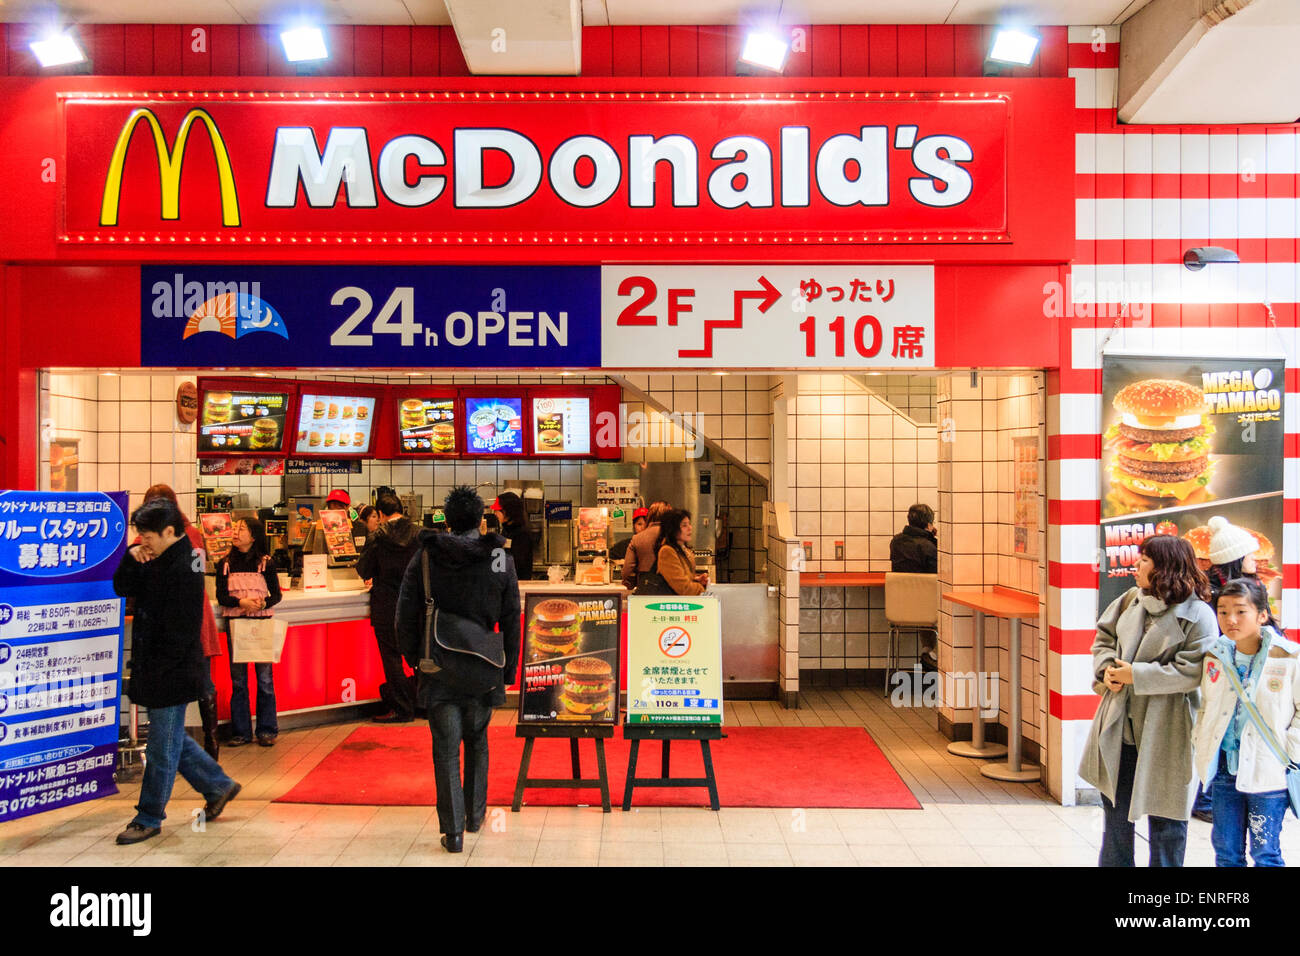 Kleines McDonald-Outlet am Bahnhof Sannomiya, Japan. Burger-Schalter vor dem Hotel, die auf Bestellungen warten, über dem Schild für 110 Personen. Stockfoto